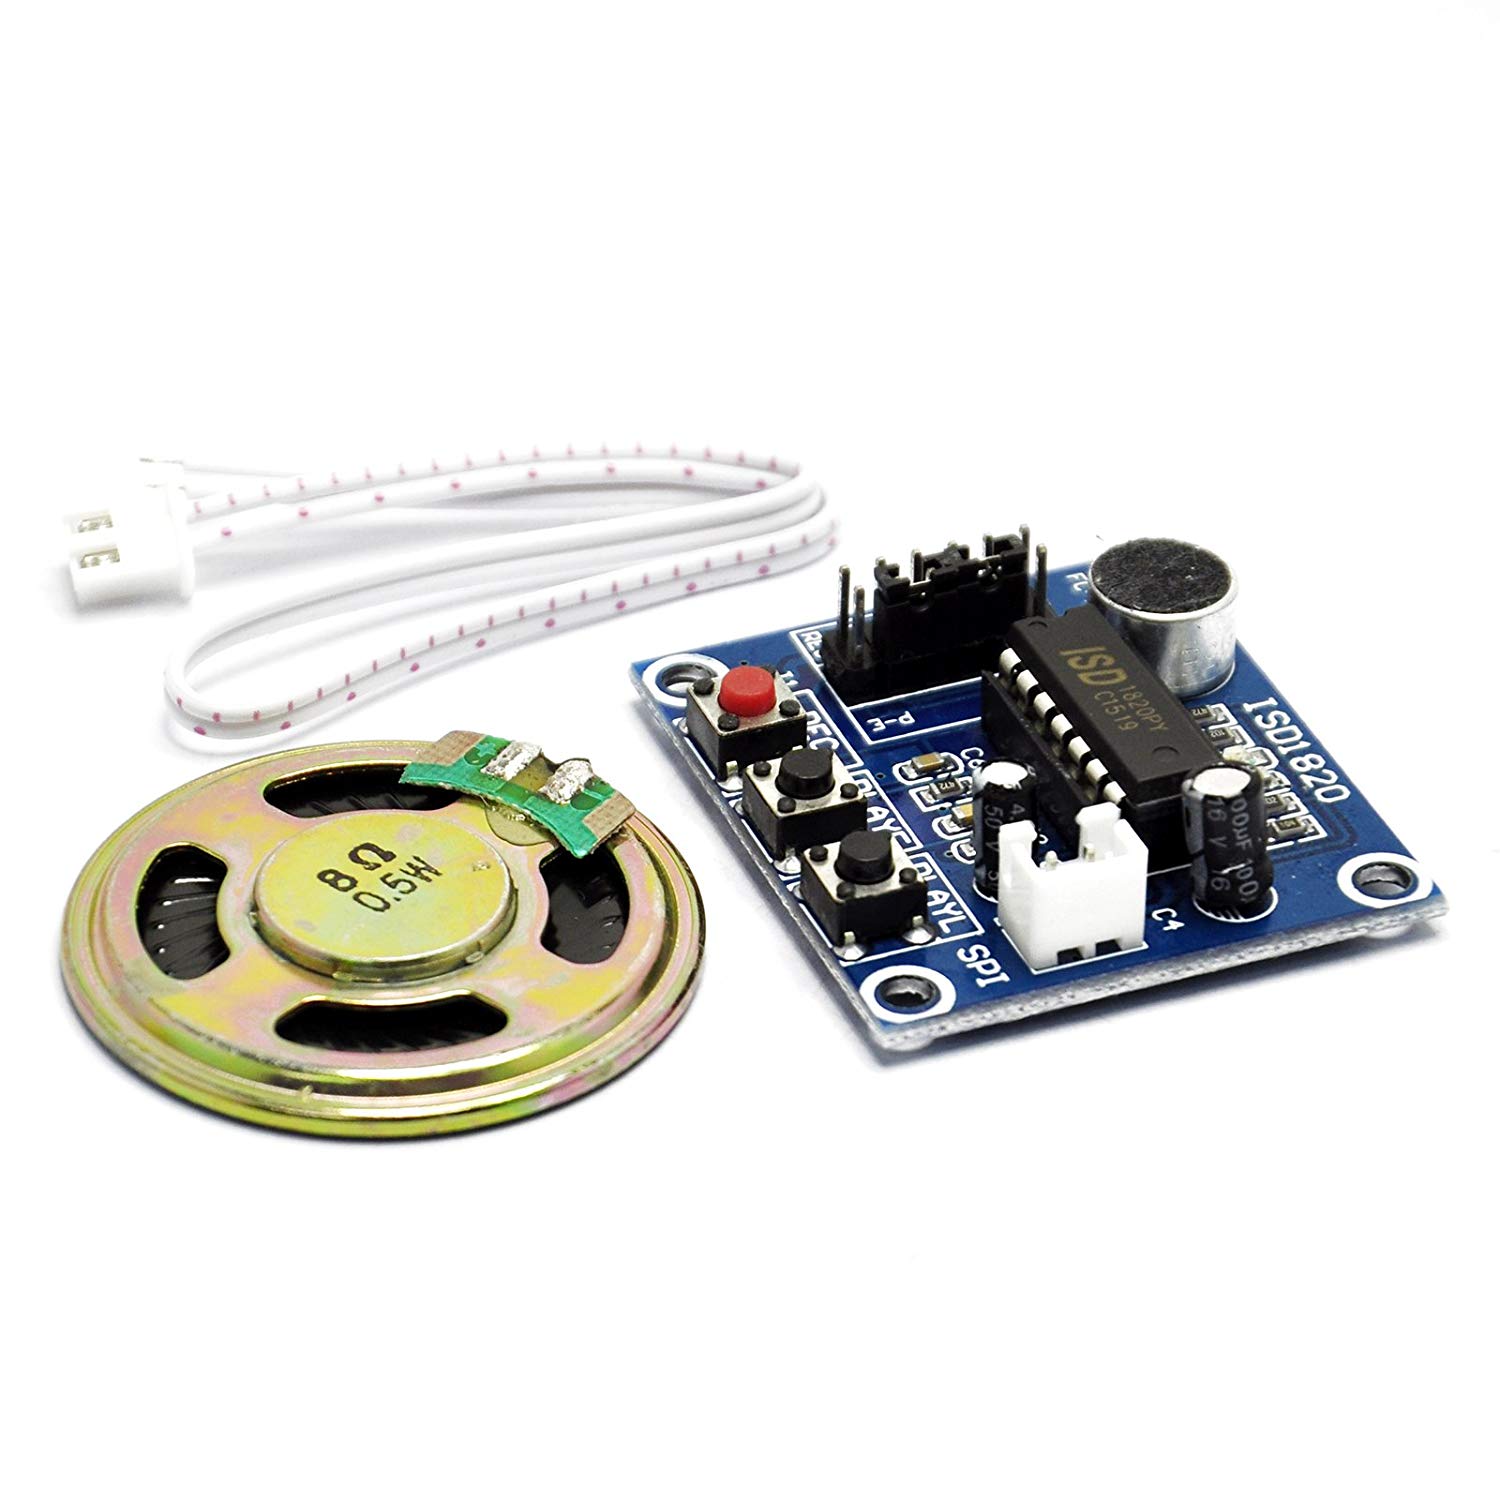 ISD1820 錄放音模組 語音模組 錄放音帶音聲音放大 送 0.5W 喇叭 Arduino 可控制